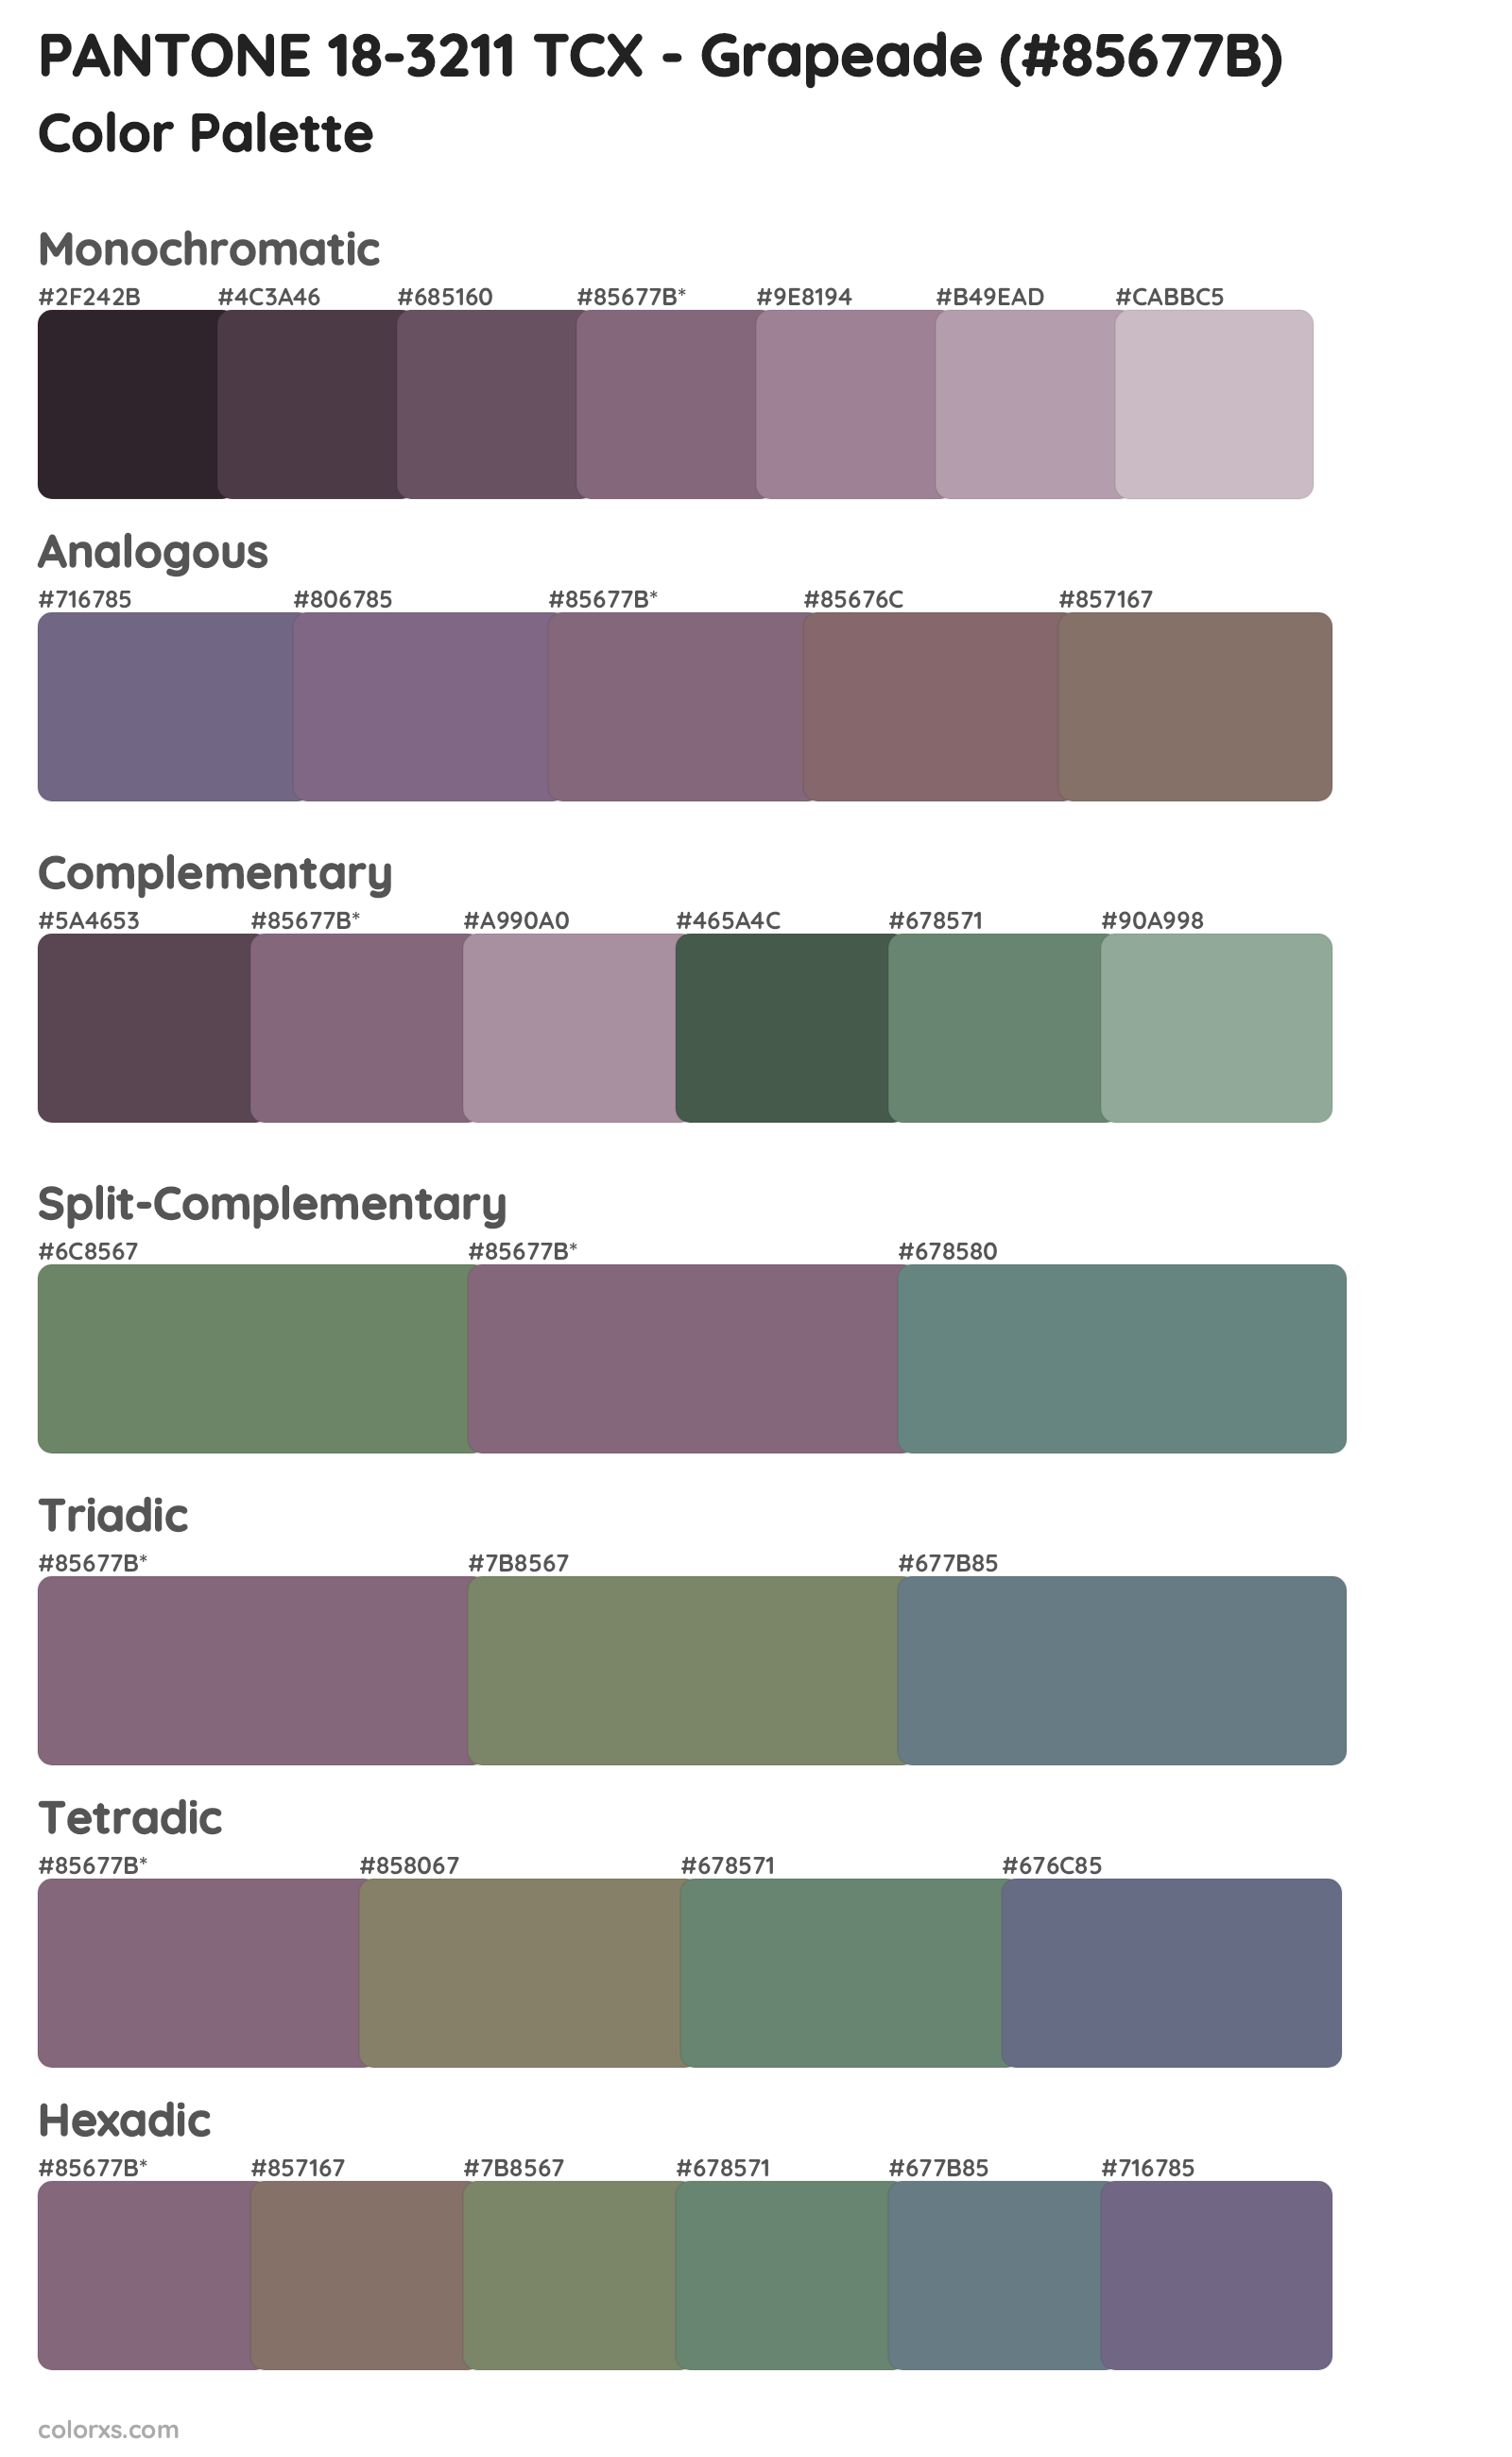 PANTONE 18-3211 TCX - Grapeade Color Scheme Palettes